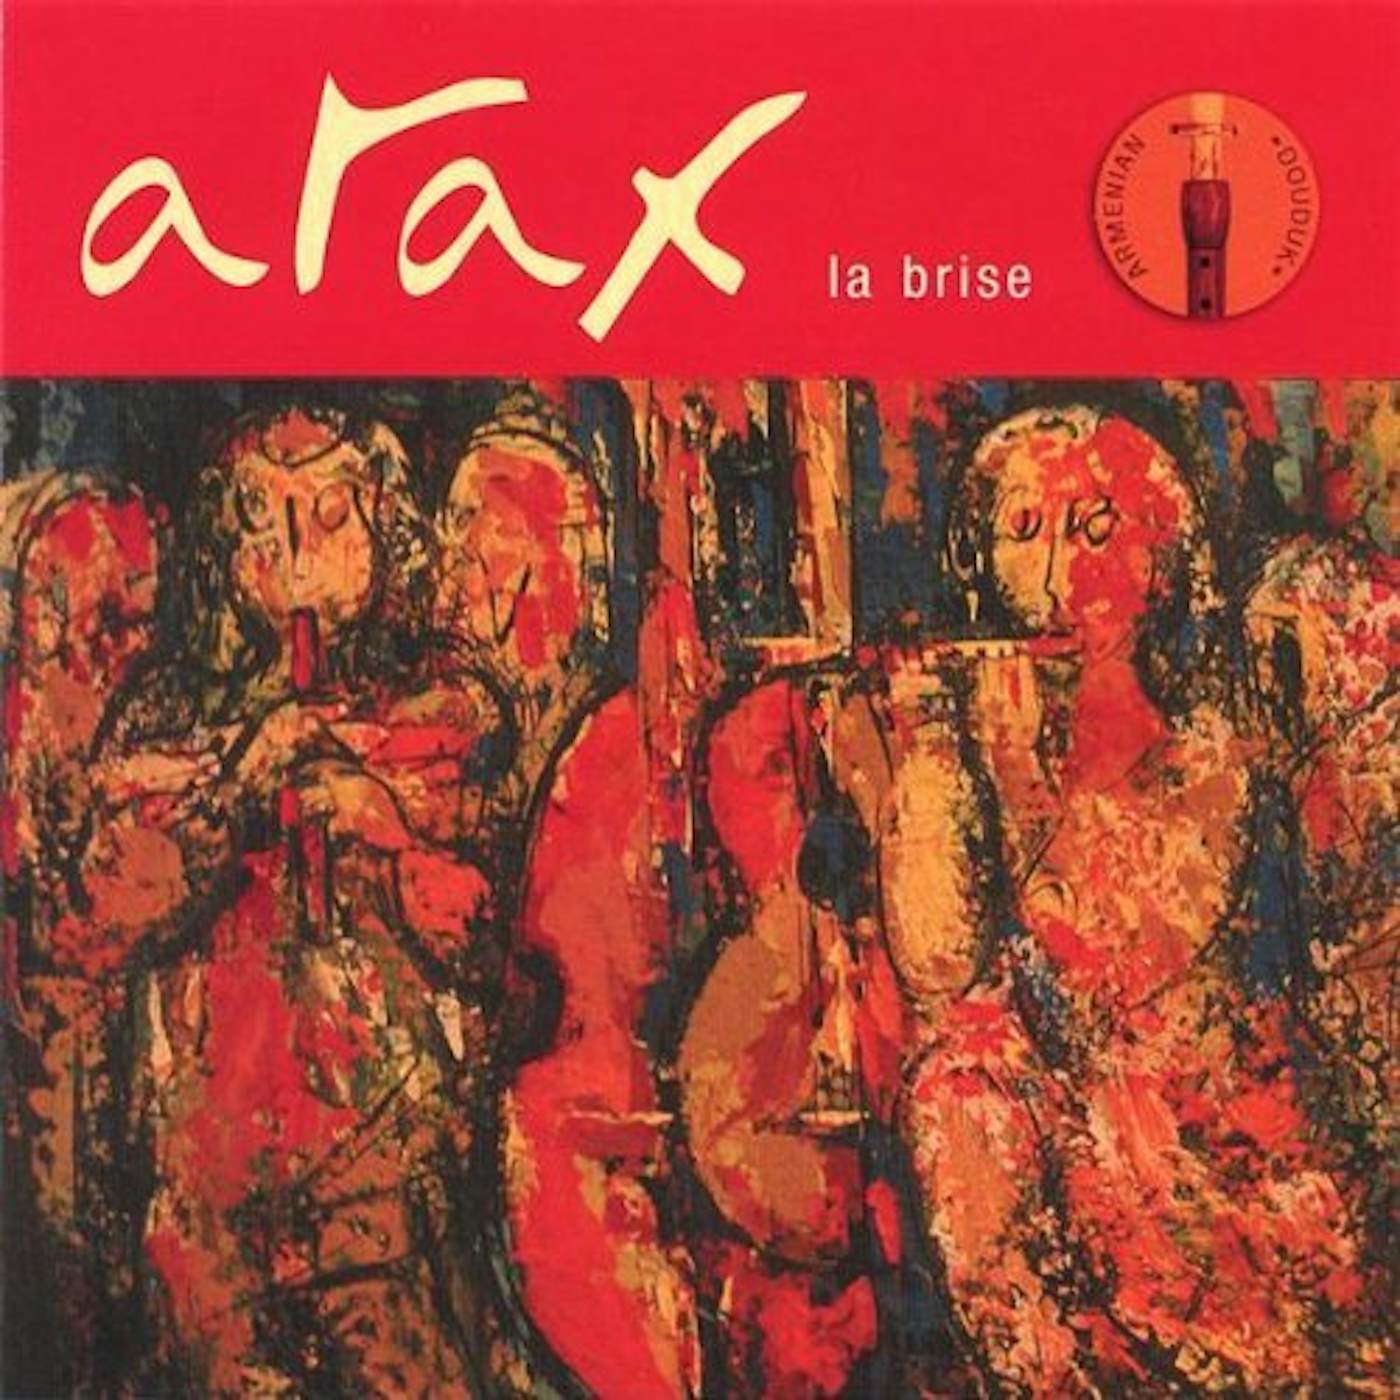 Arax LA BRISE CD